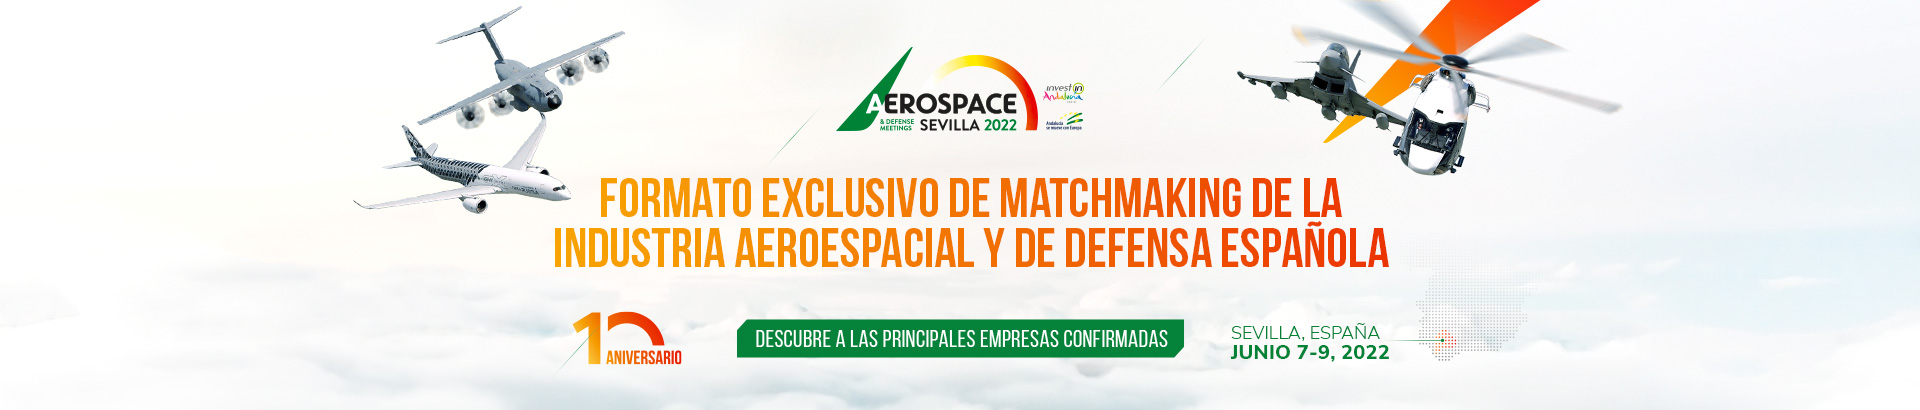 Aerospace Sevilla 2022